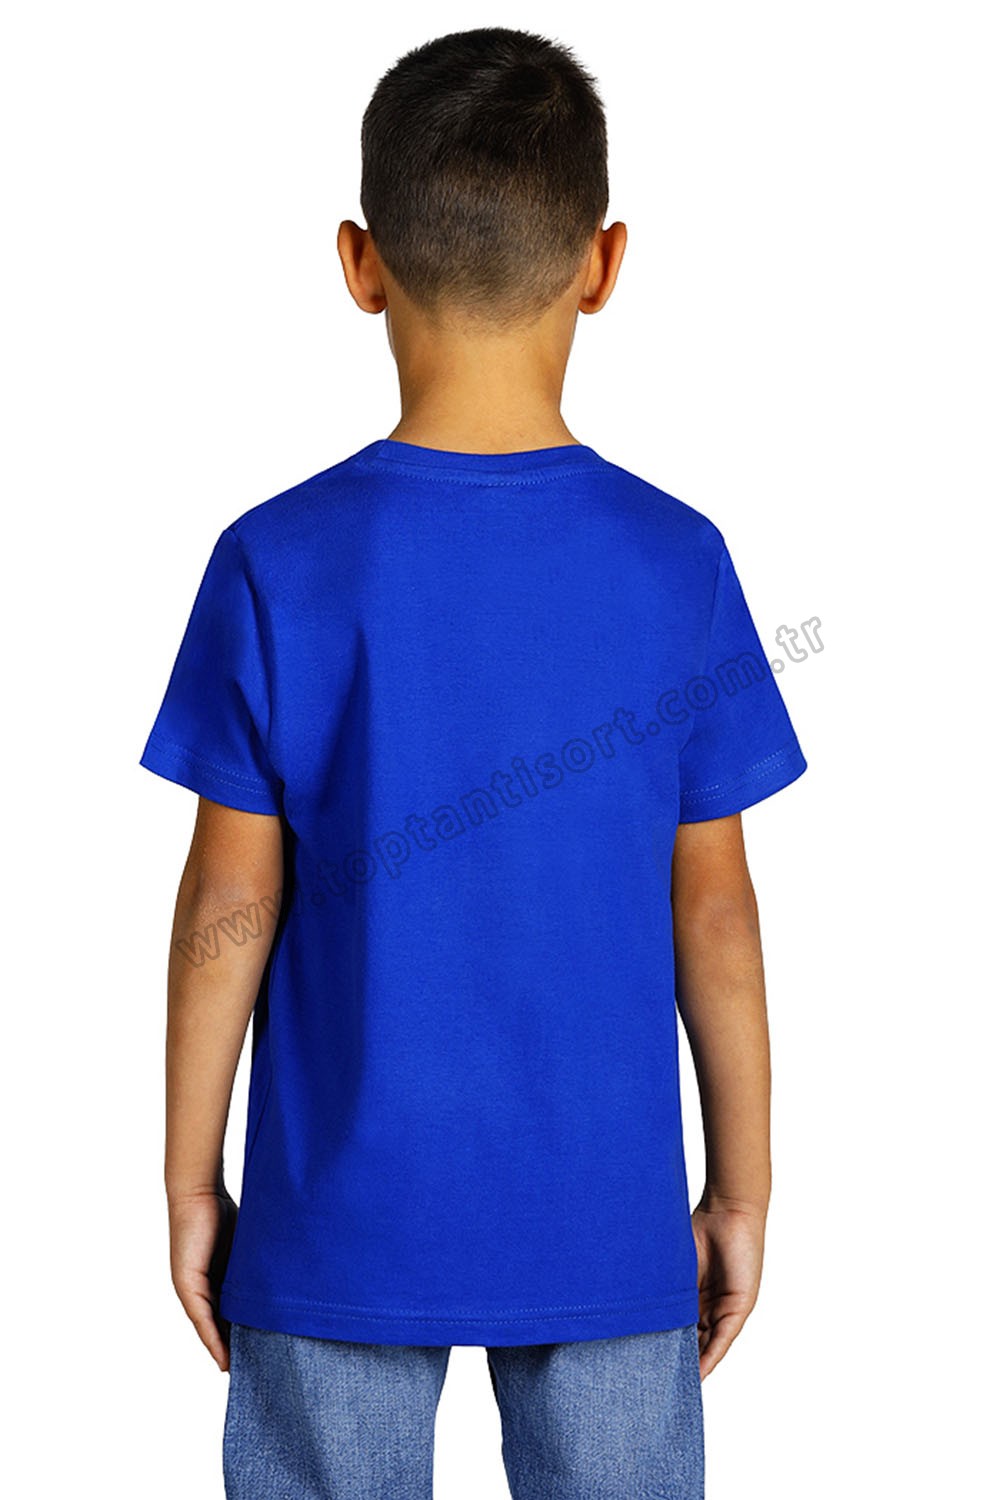 Mavi Erkek Çocuk Tişörtü